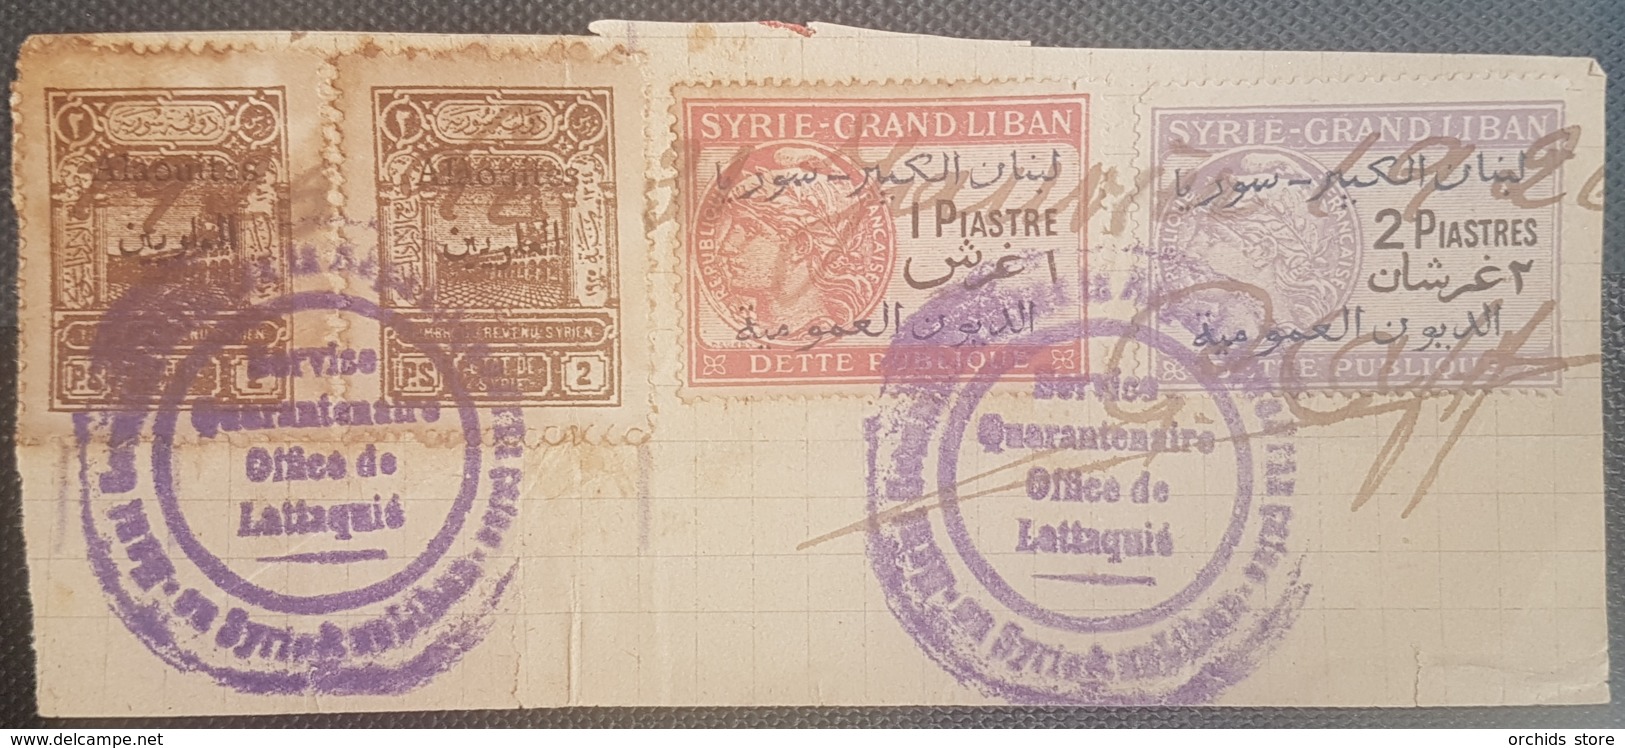 NO11 Syria Alaouites Piece SERVICE QUARENTINE LATTAQUIE Franked Frevenue Stamps Opt ALaouites & Syrie GL Dette Publique - Syria